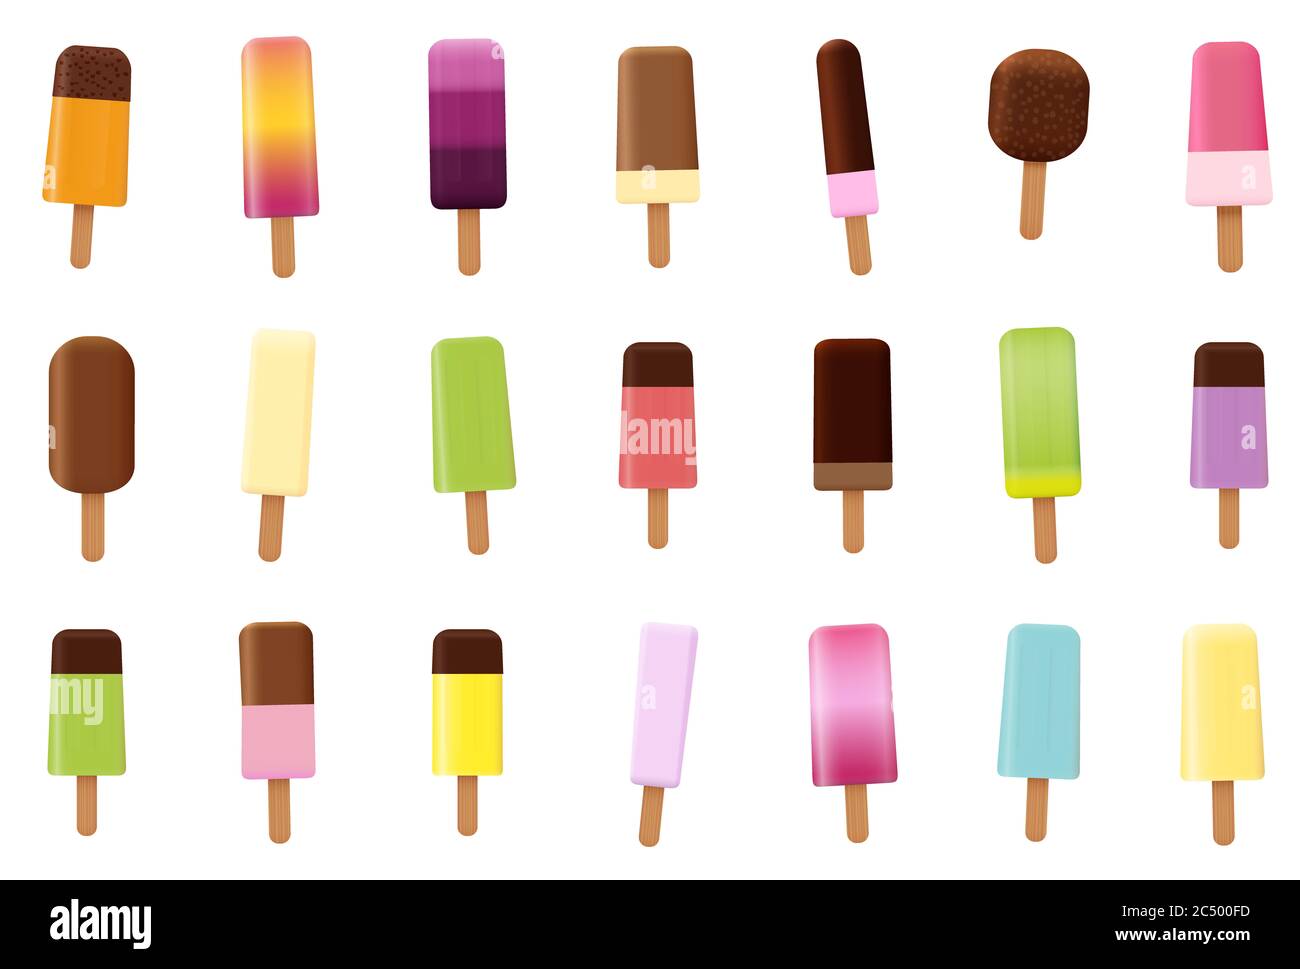 Assortimento di lecci di ghiaccio. Set di pop-sicle assortite e colorate, molti sapori diversi - illustrazione su sfondo bianco. Foto Stock